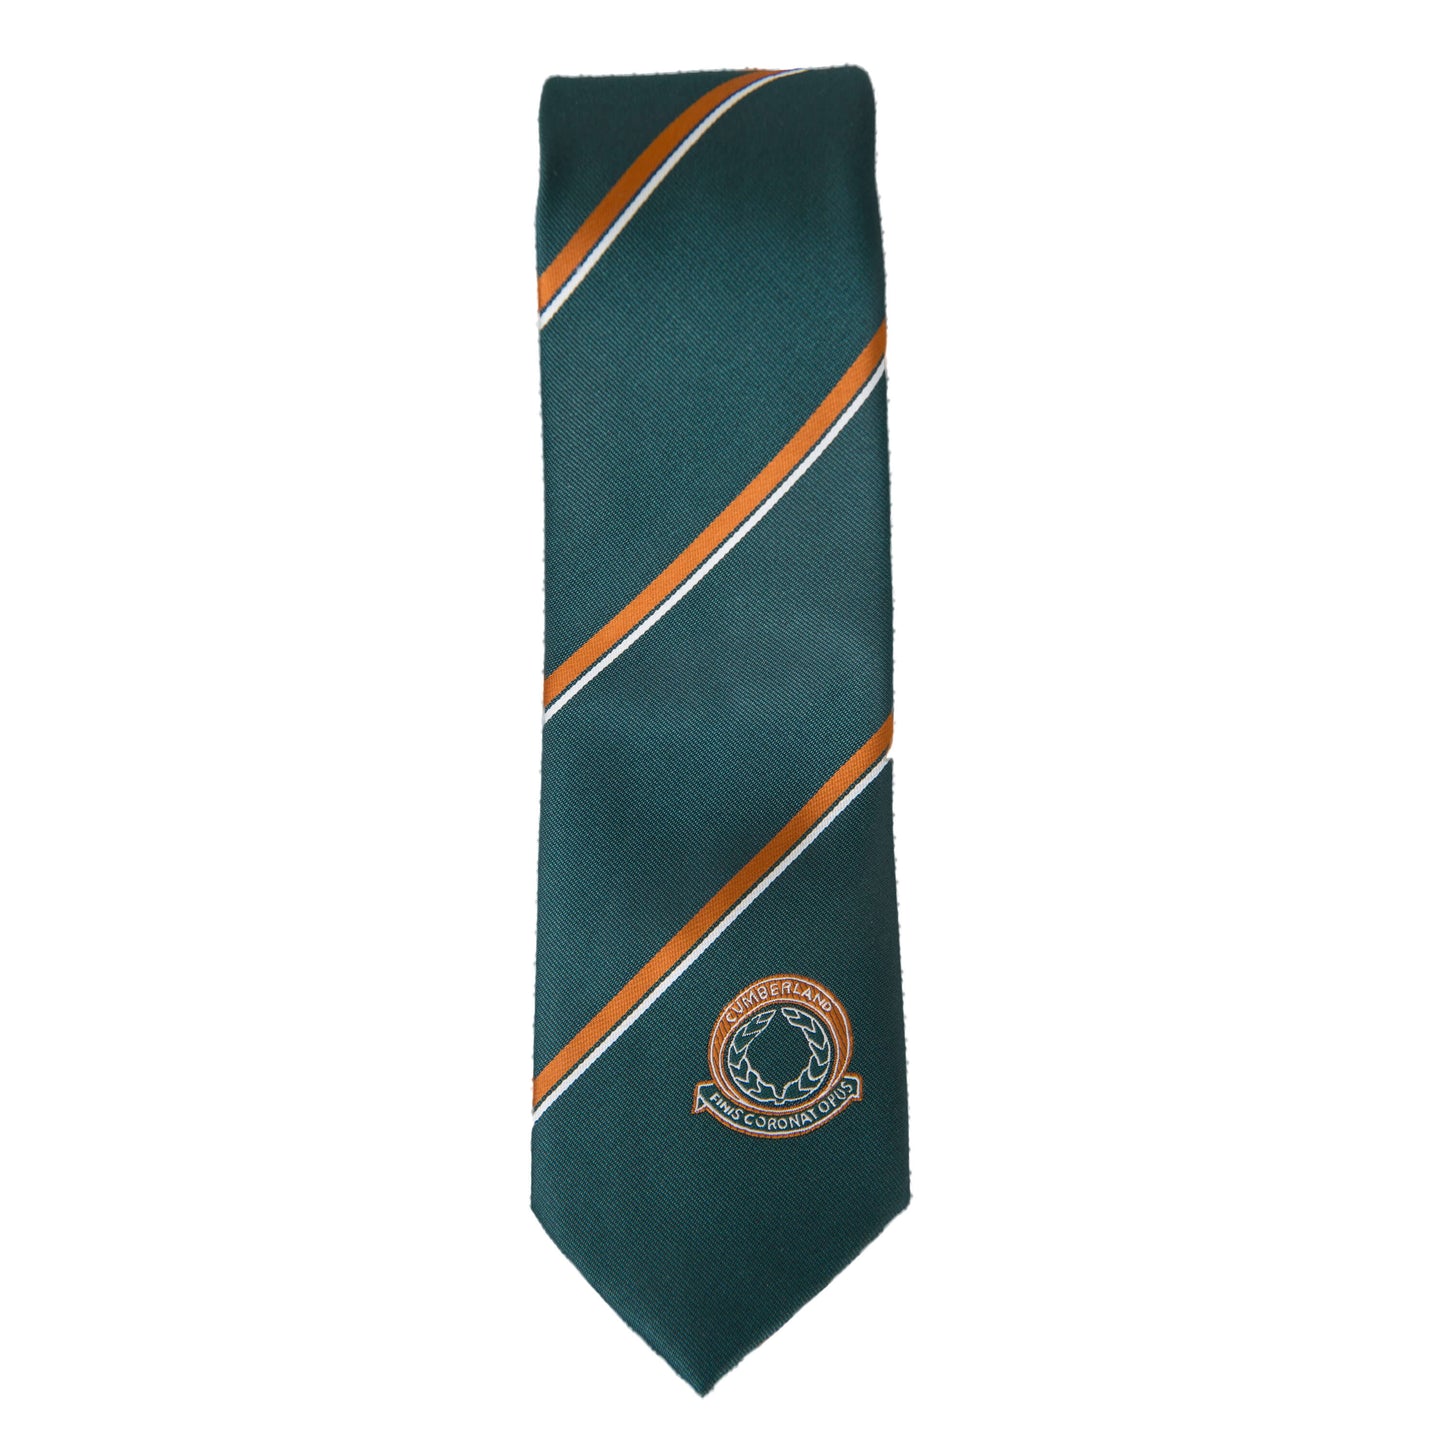 School tie